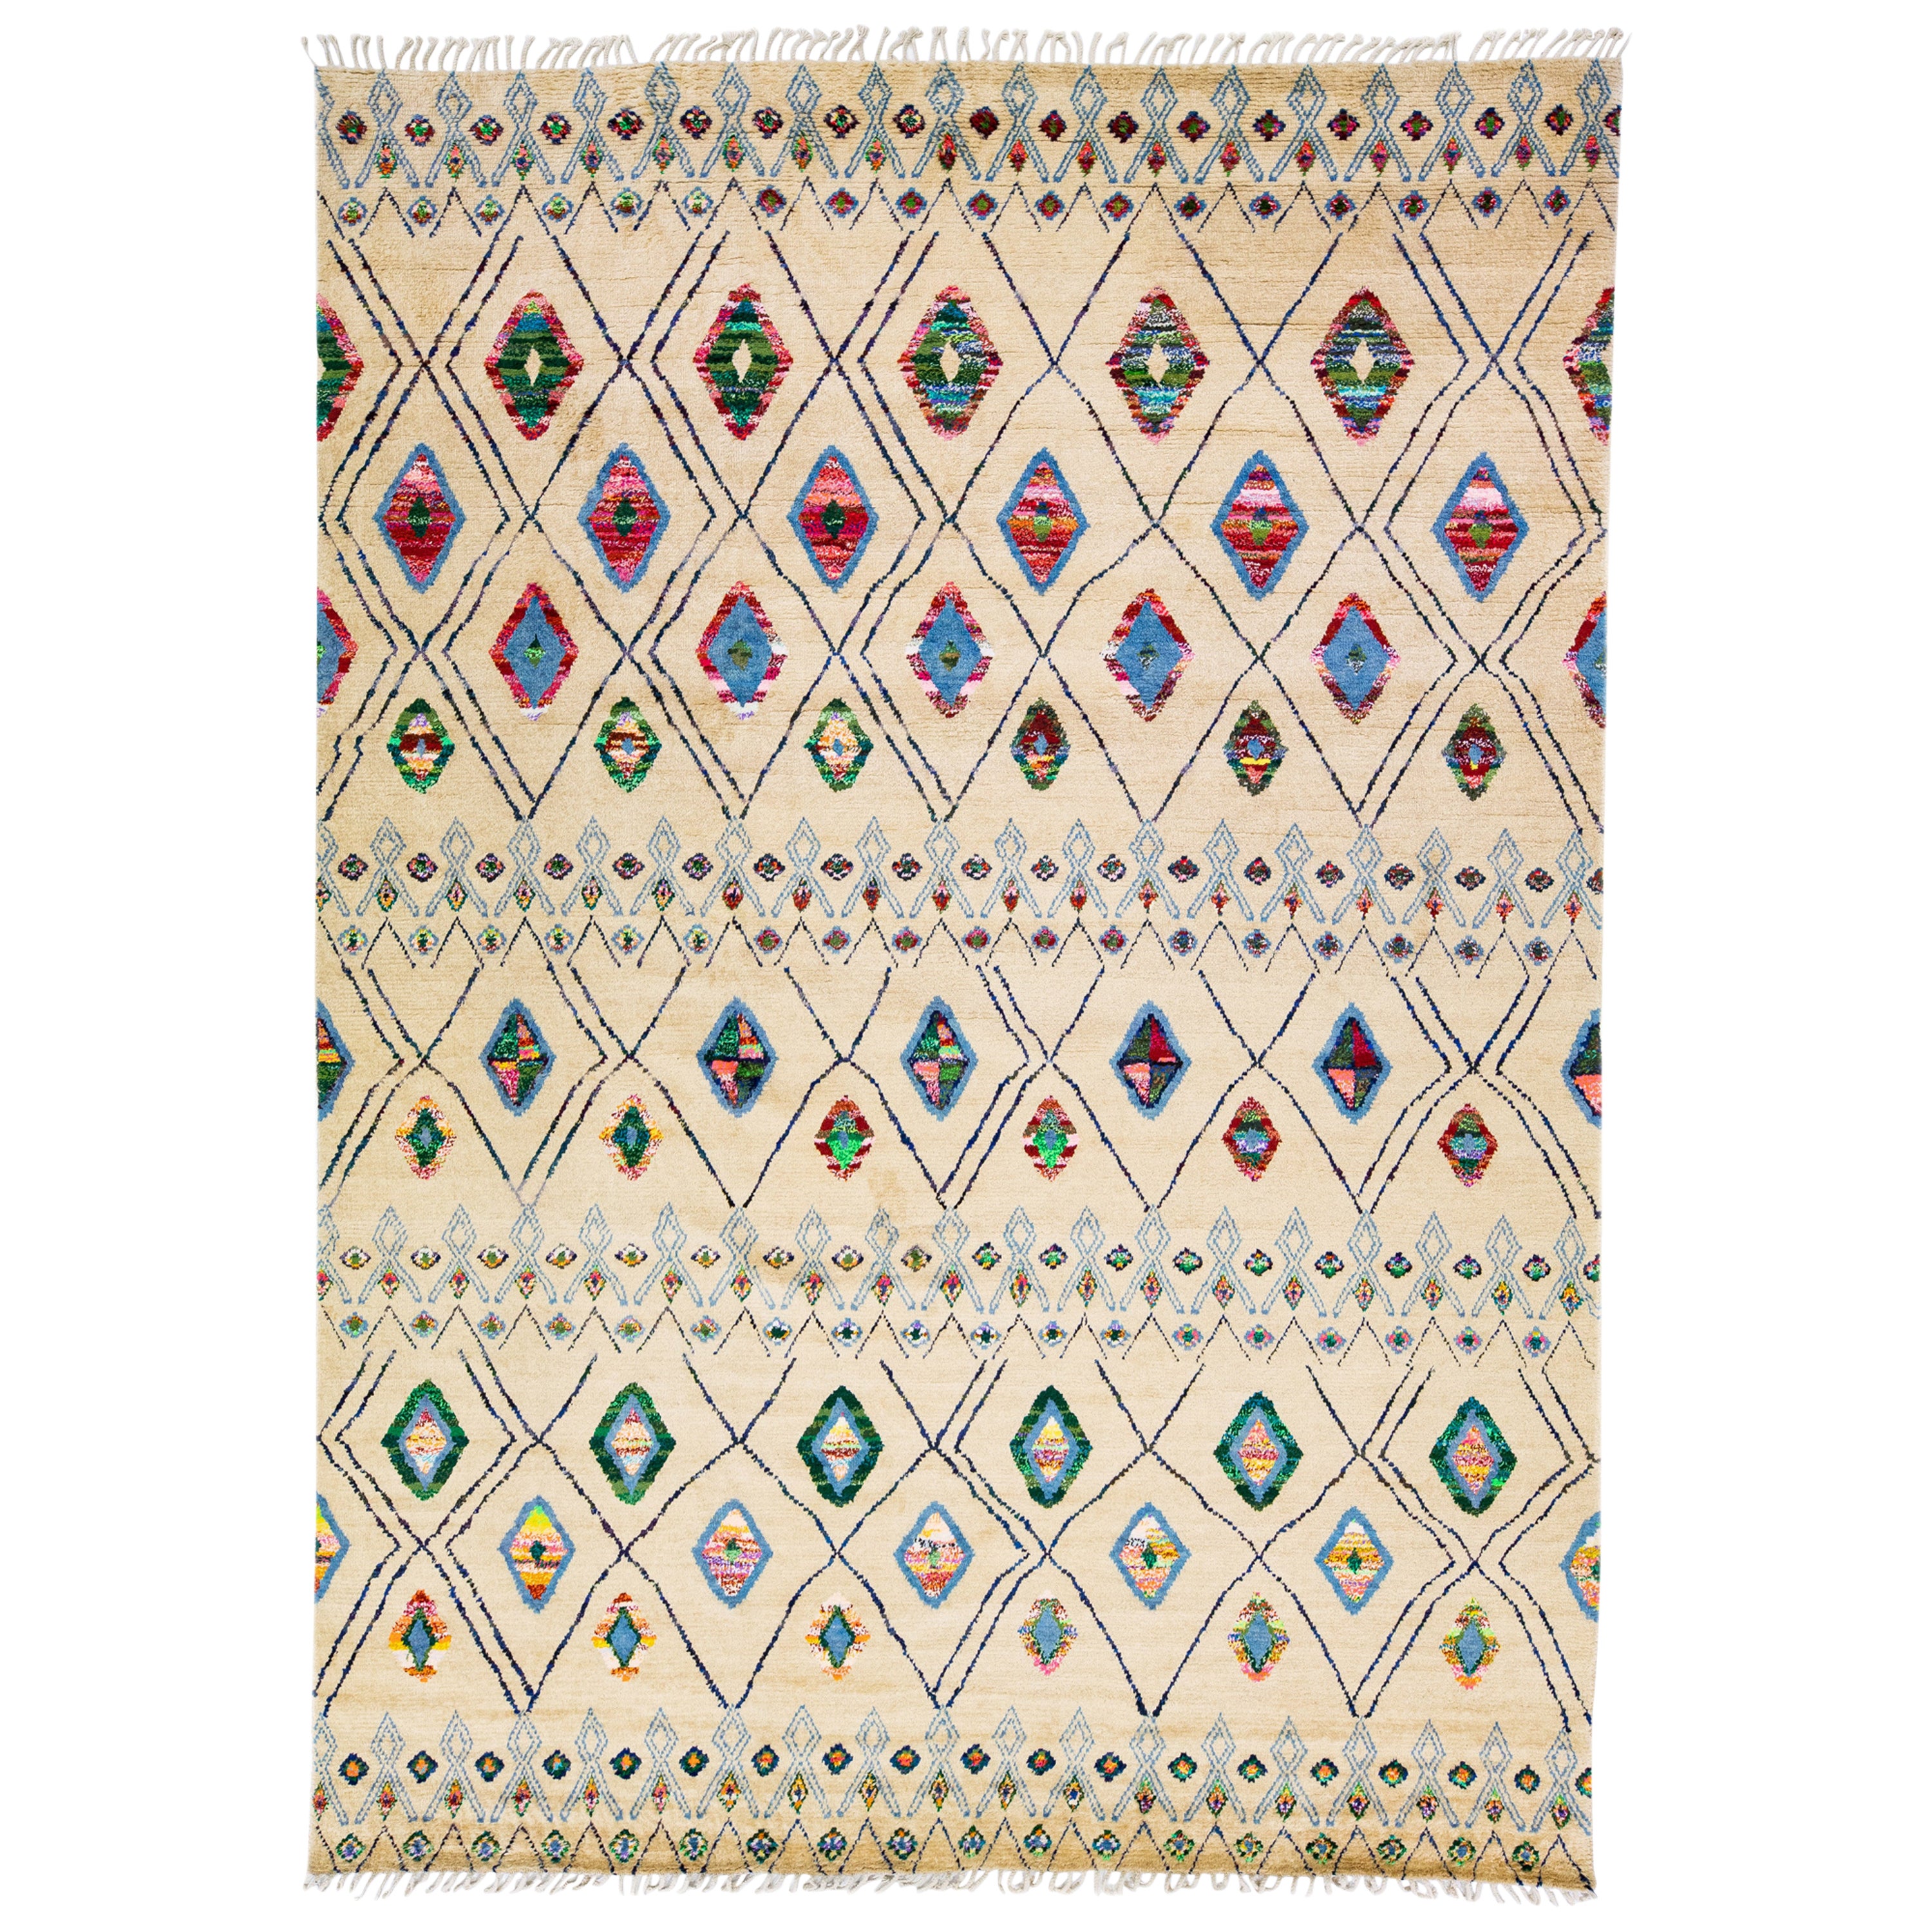 Tapis moderne de style marocain en laine beige fait à la main avec motifs tribaux